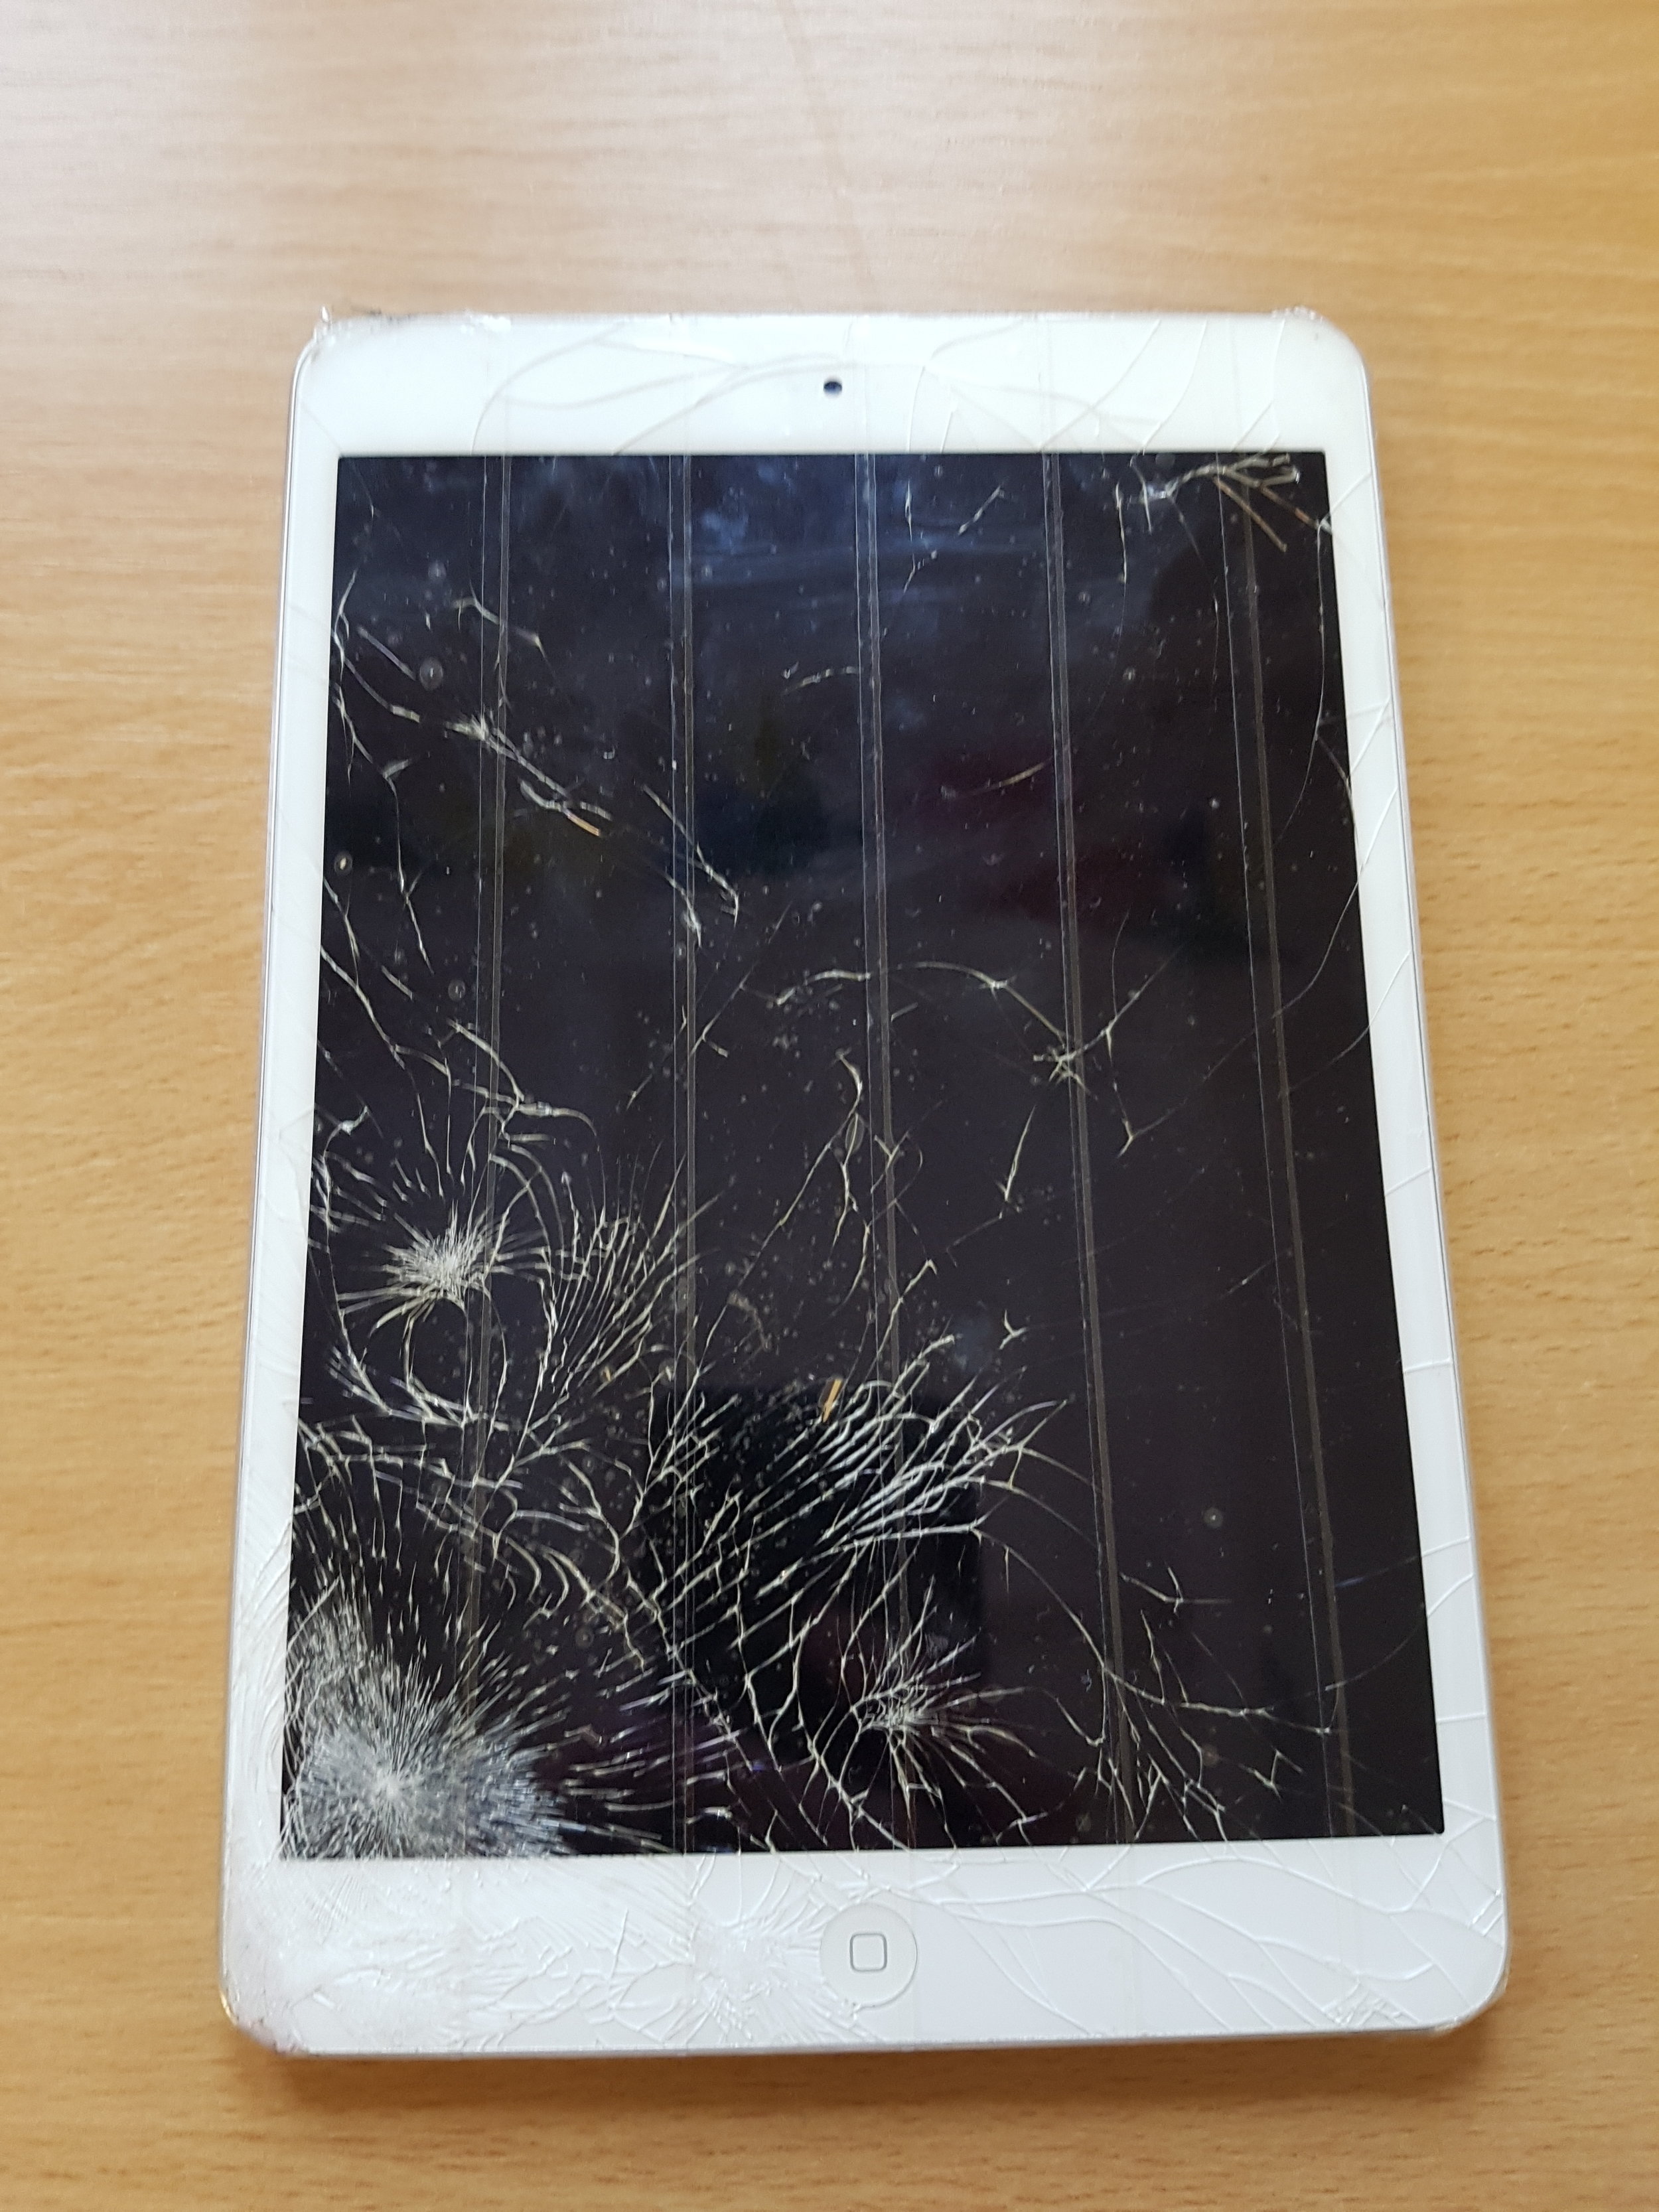 iPad Mini Before Repair